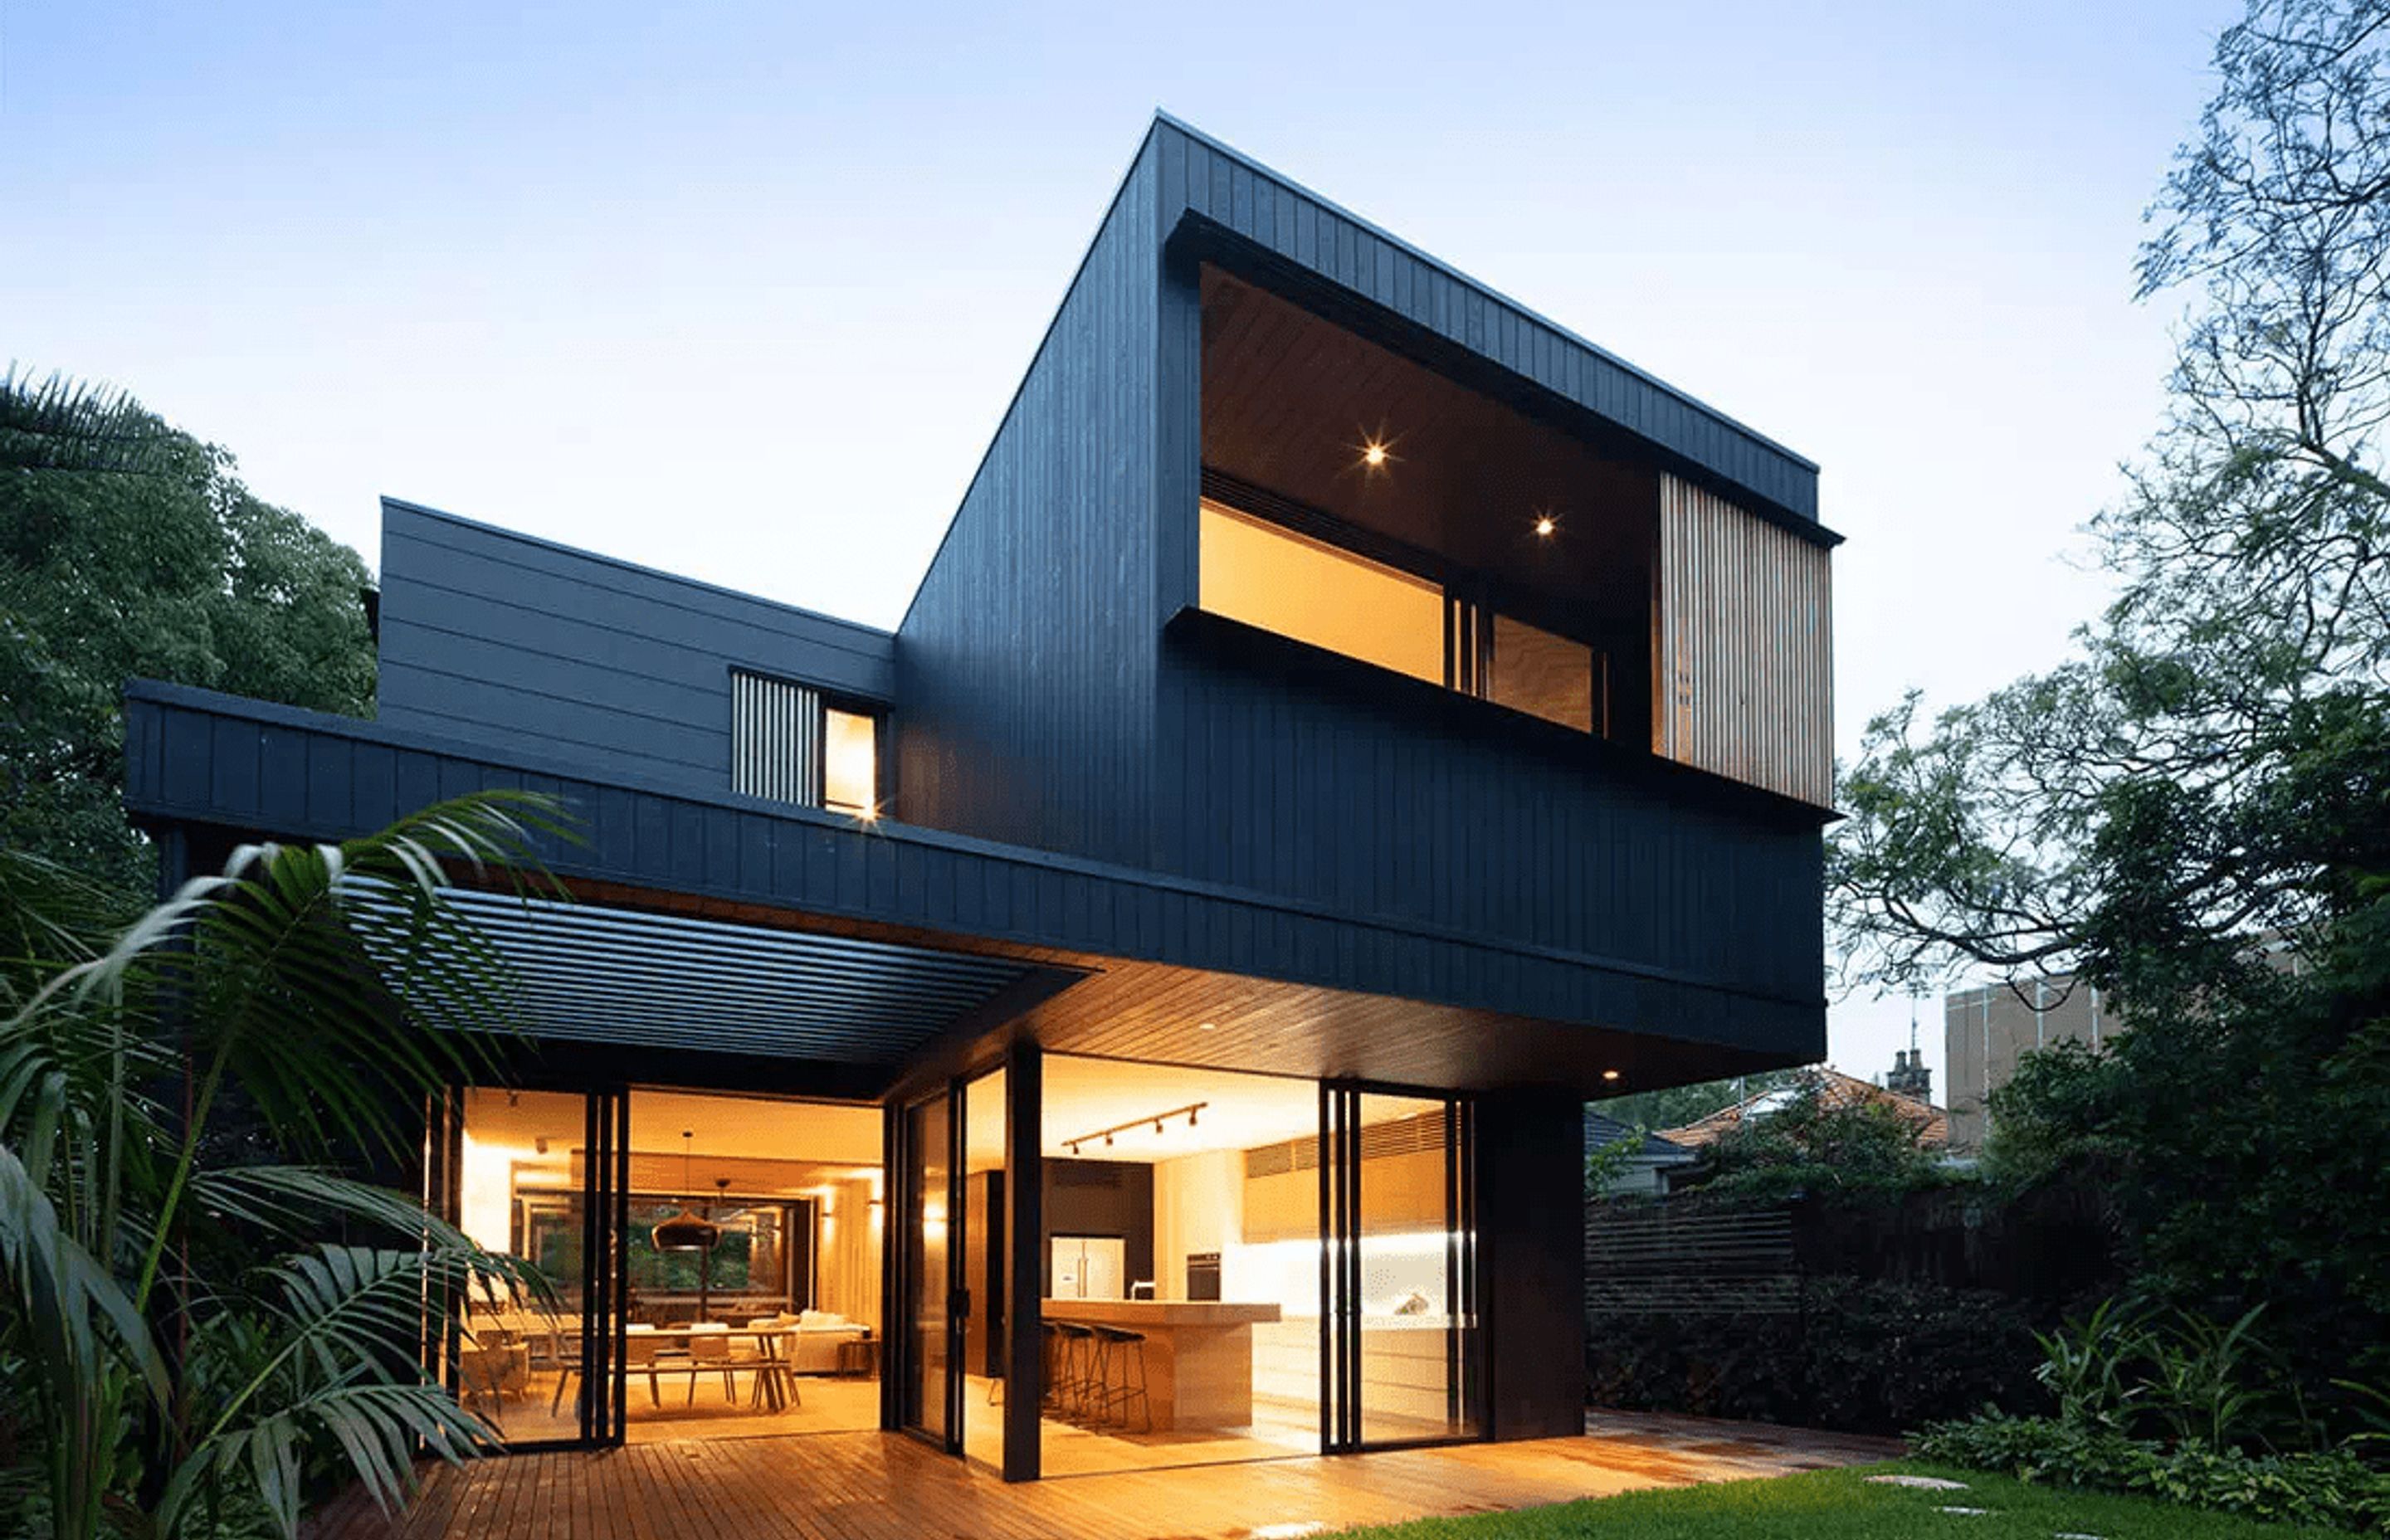 Our elegant build in Tamarama, NSW.